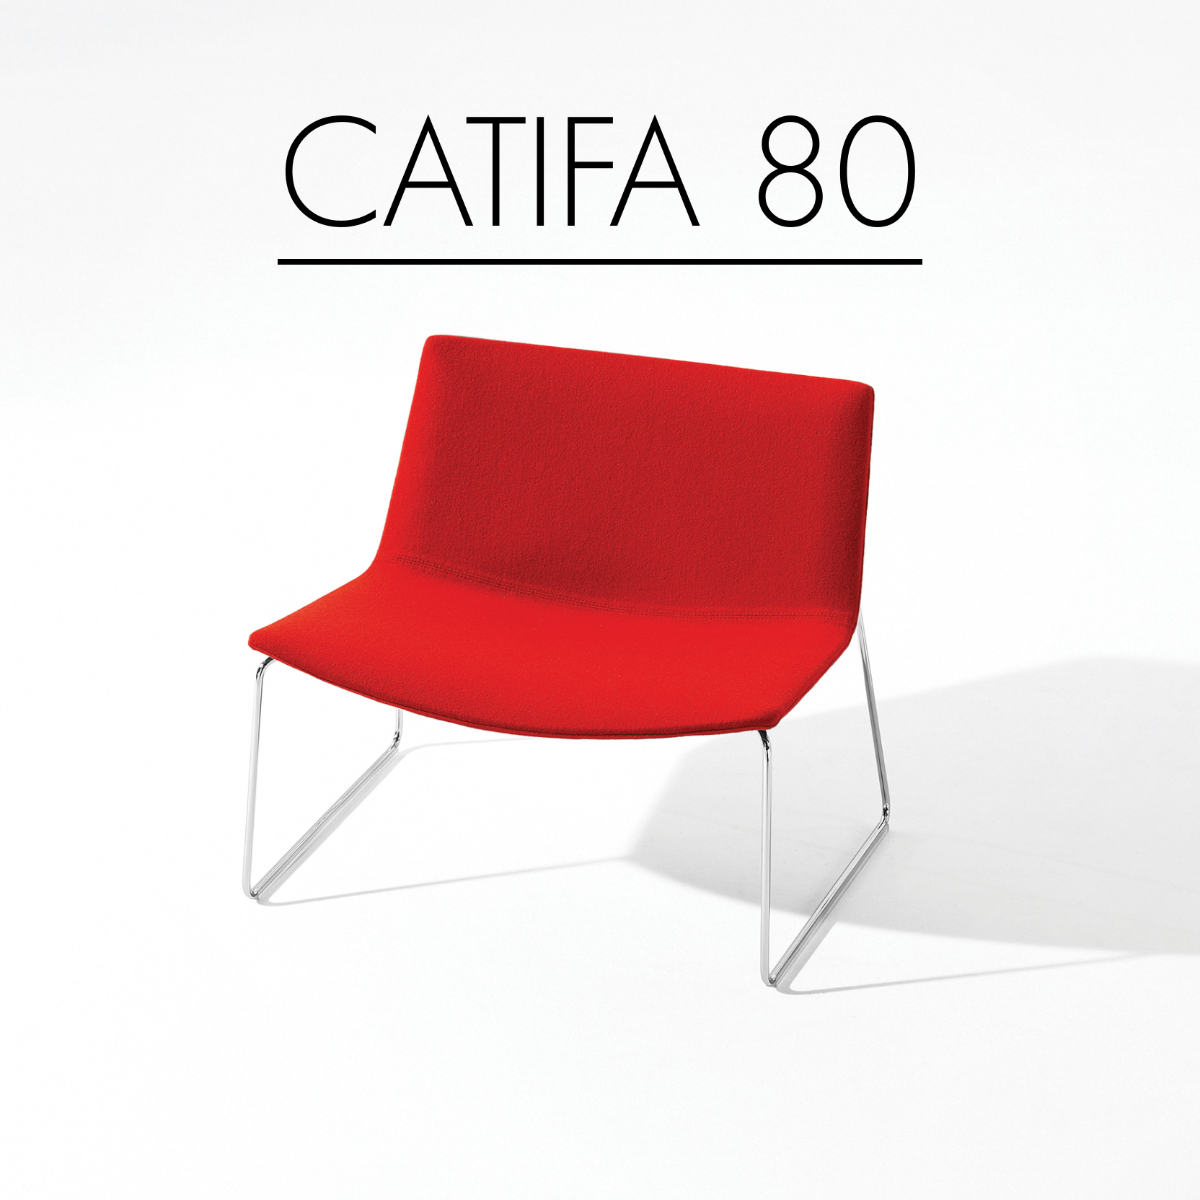 Catifa 80